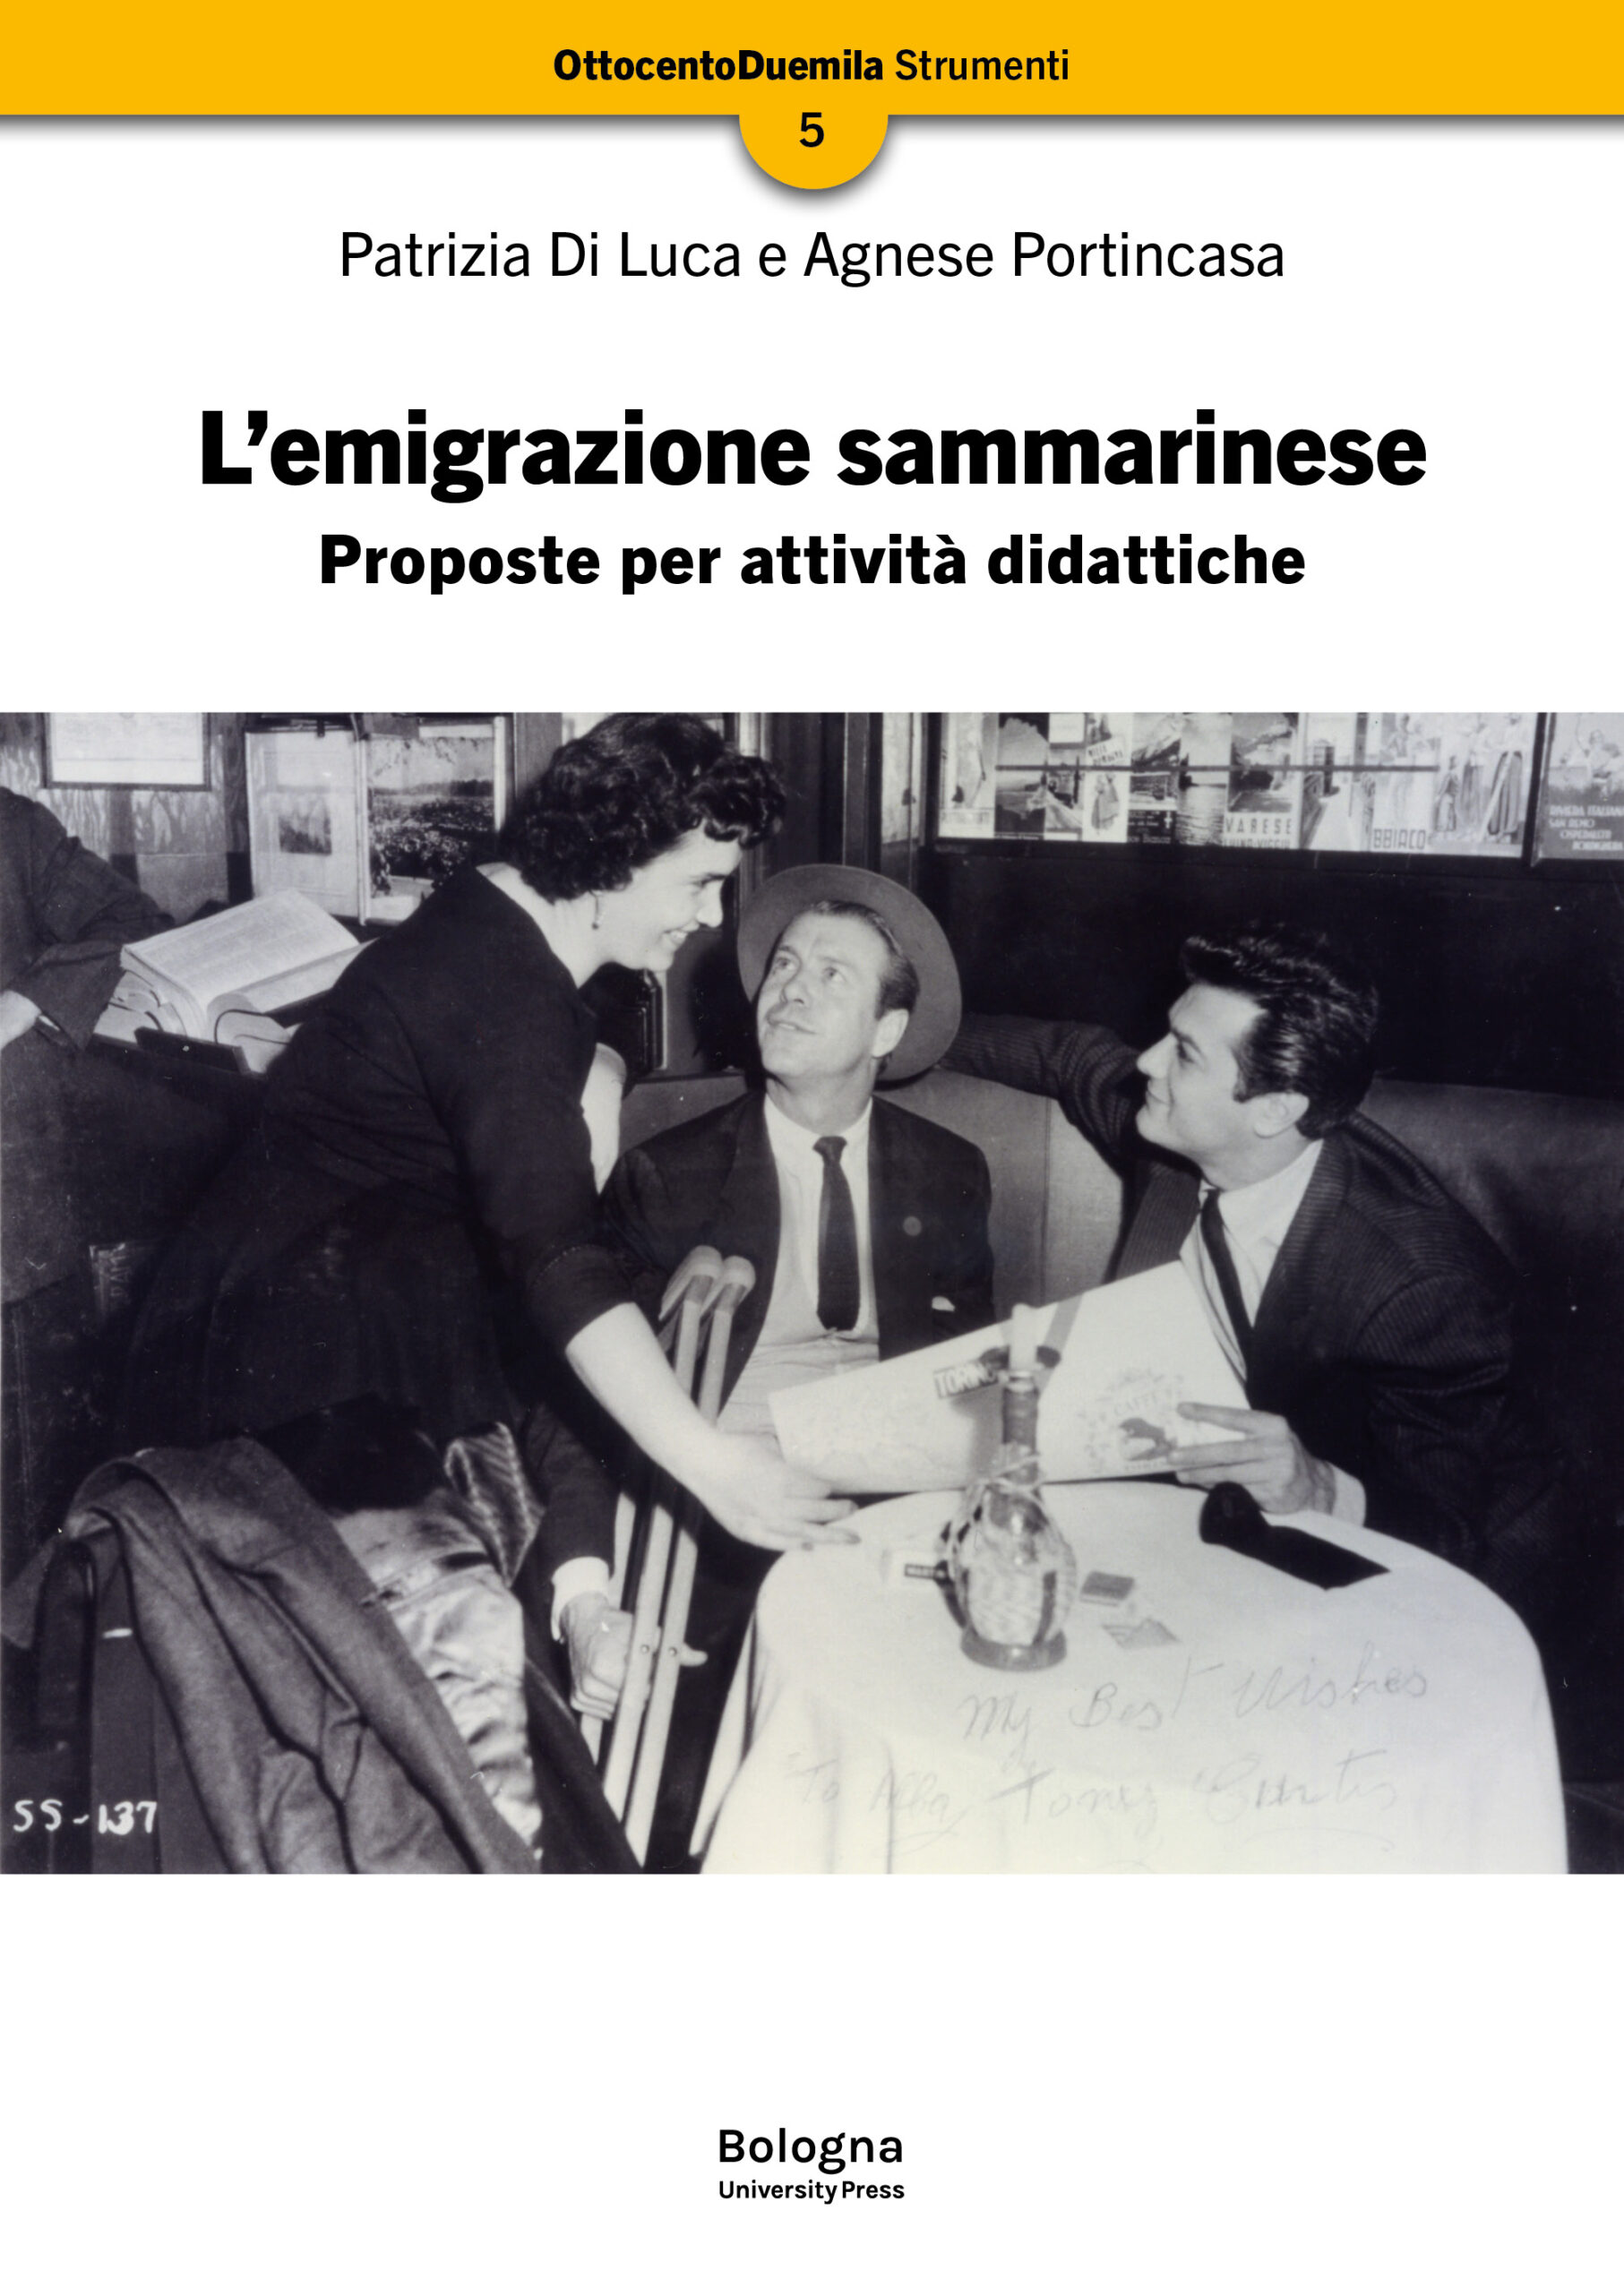 L’emigrazione sammarinese - Bologna University Press